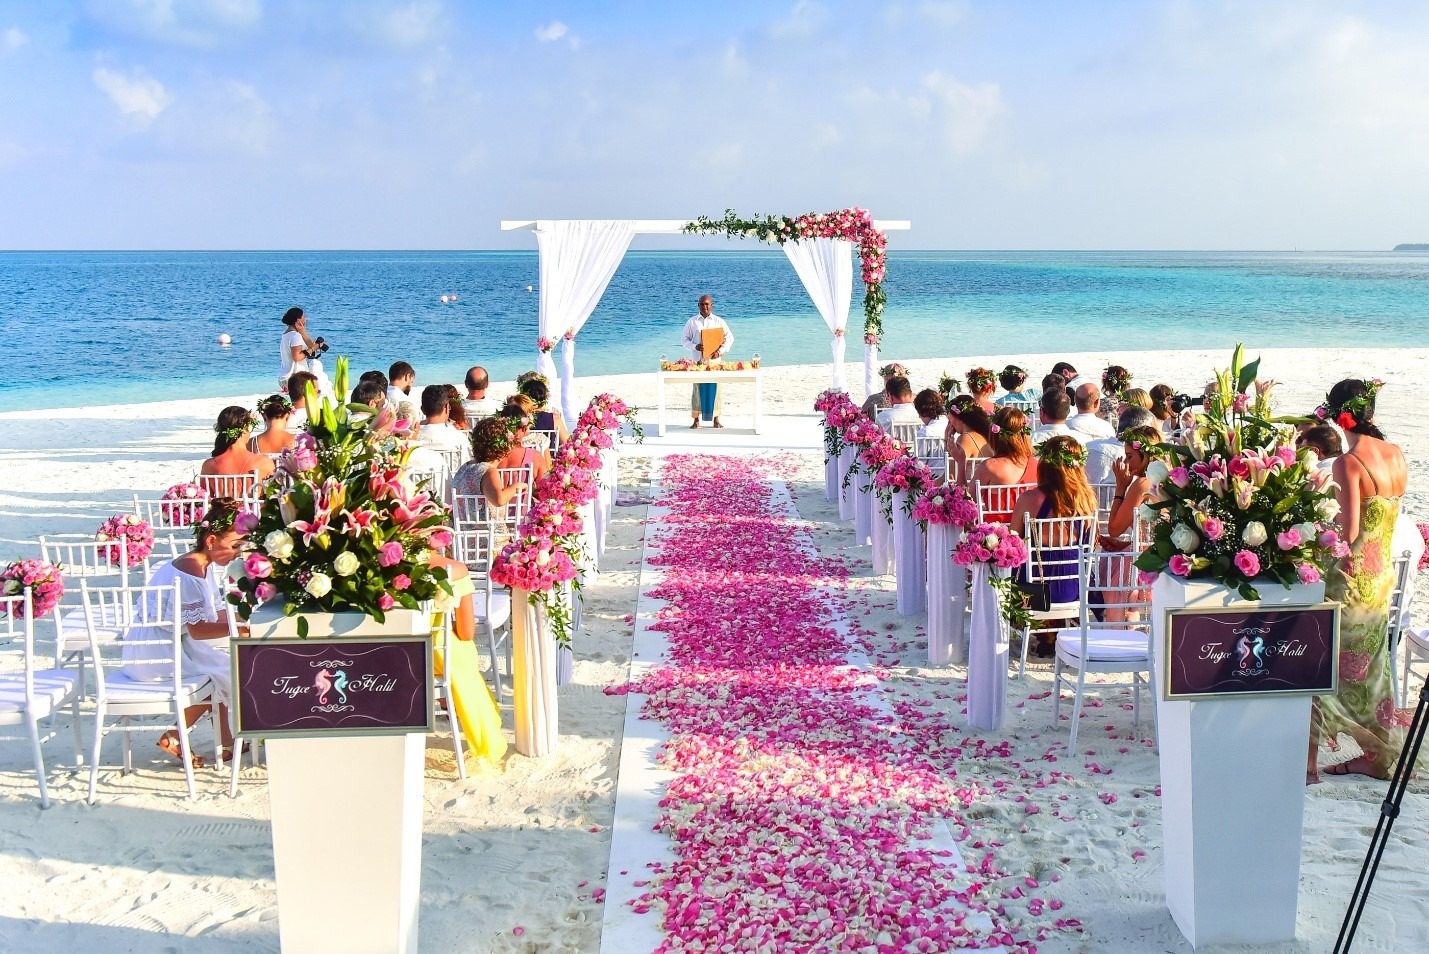 Customize the wedding ceremony